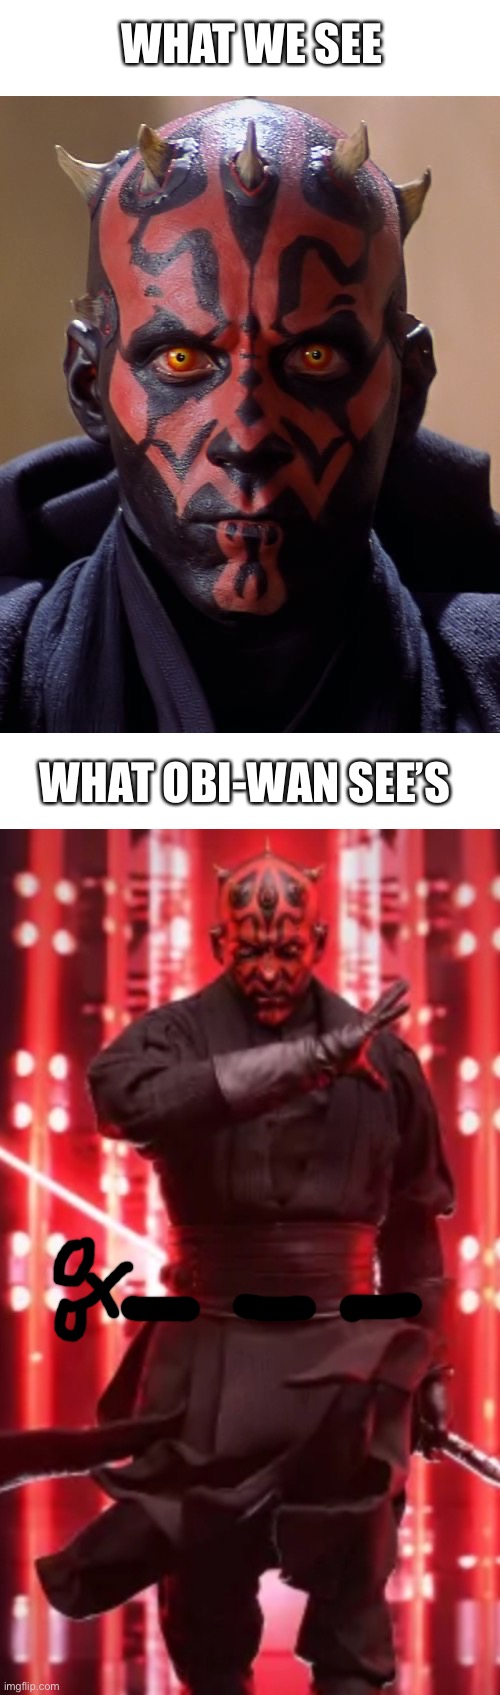 What Obi-Wan see’s | WHAT WE SEE; WHAT OBI-WAN SEE’S | image tagged in darth maul,obi-wan | made w/ Imgflip meme maker